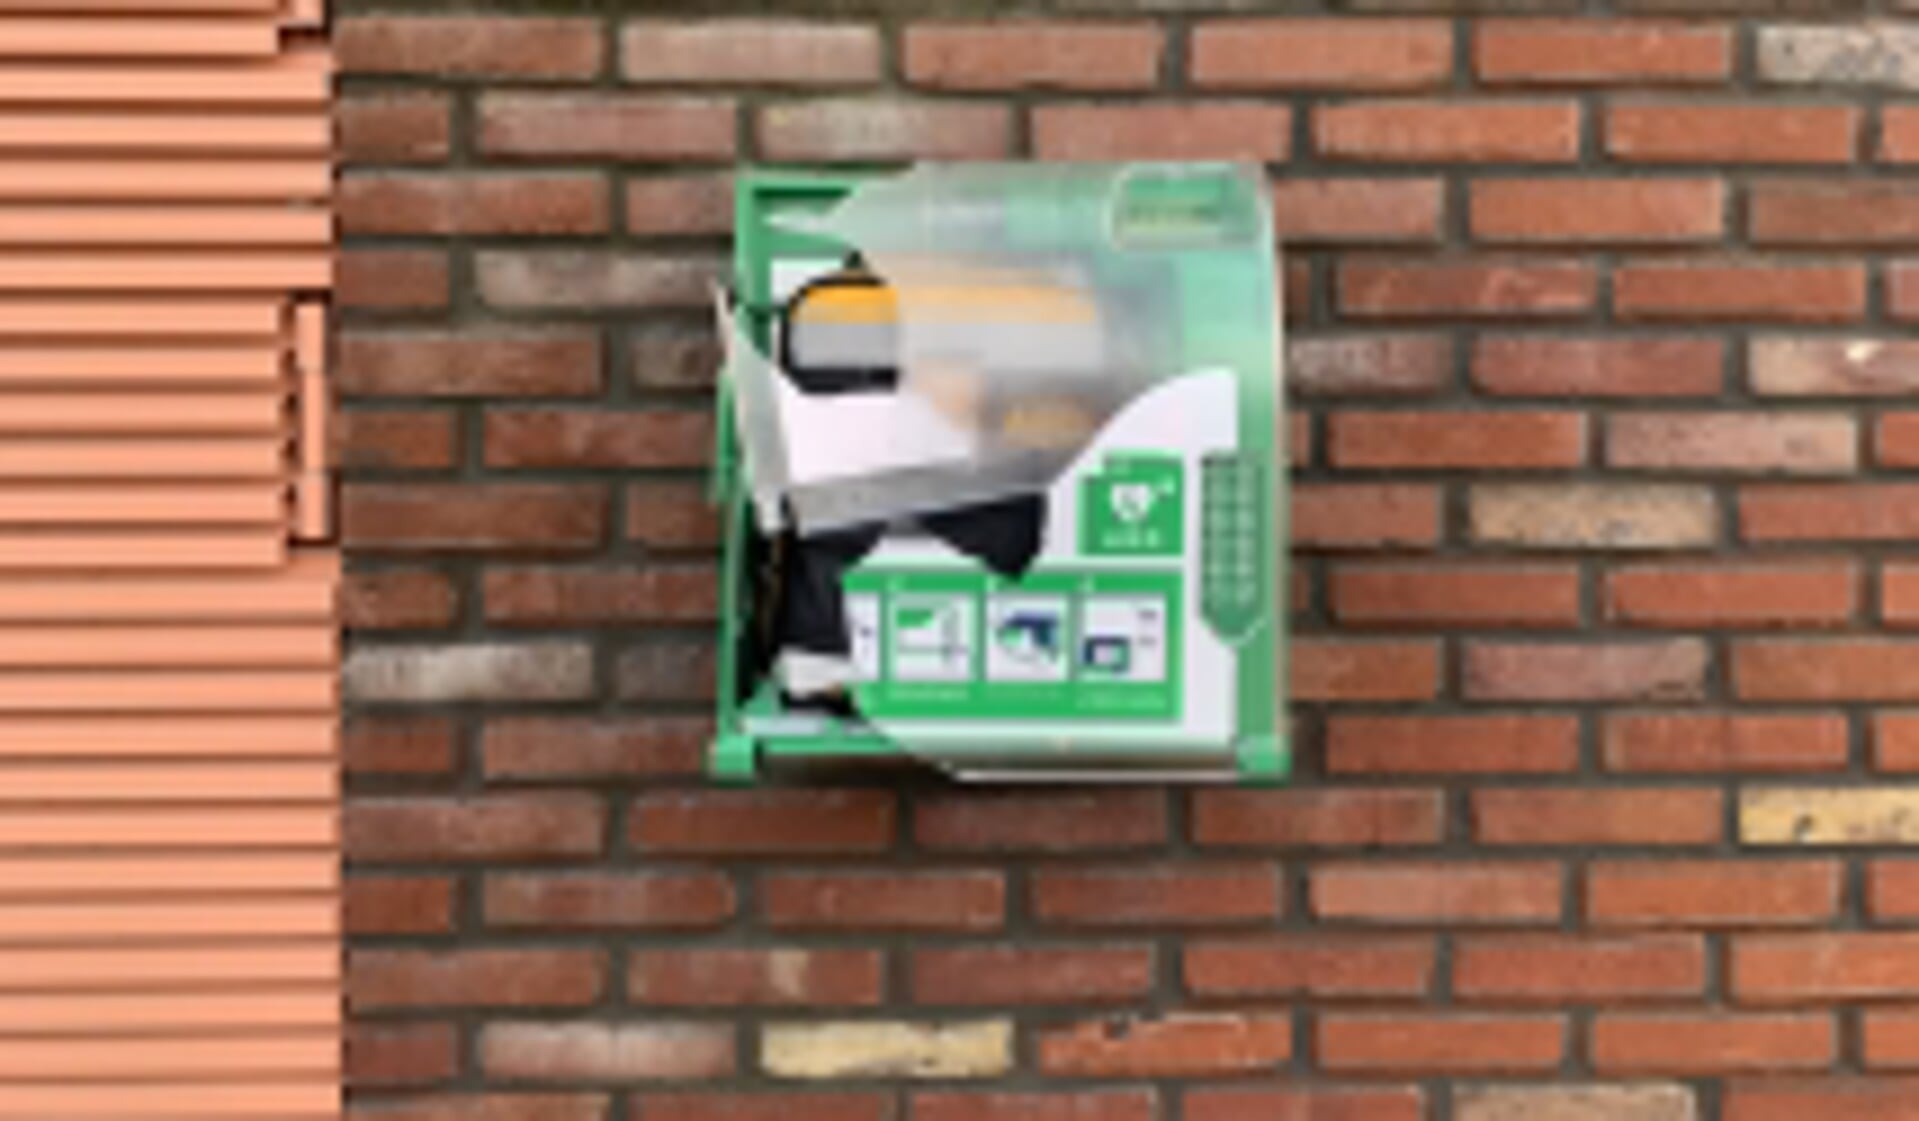 Ook een AED-kastje aan de Sparrengaarde werd vernield tijdens de jaarwisseling. (archiefbeeld)